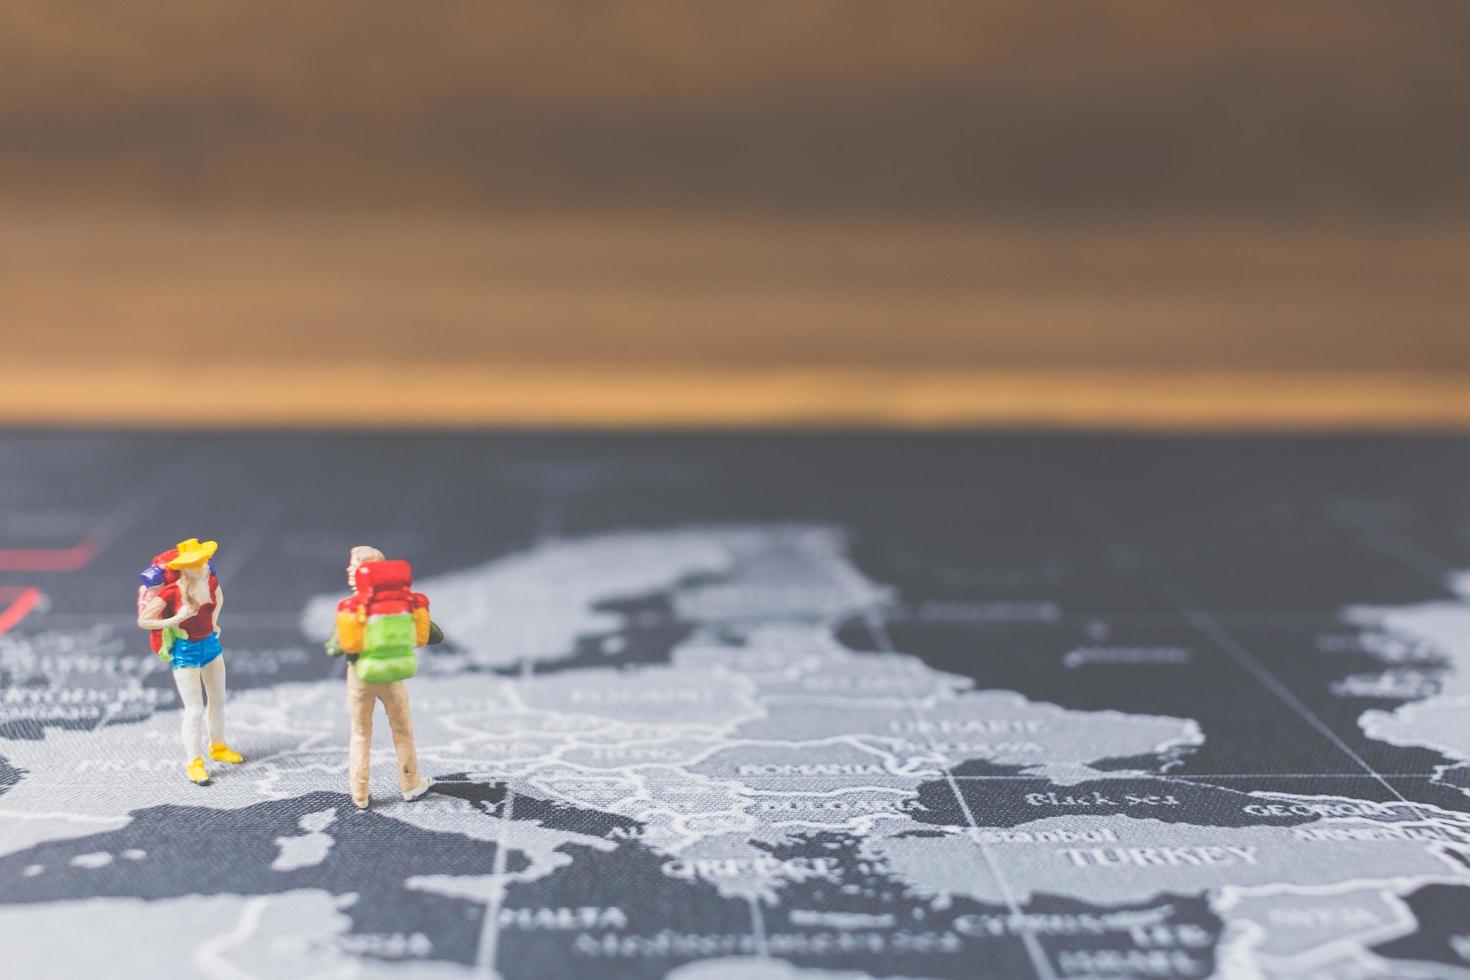 miniatuur backpackers lopen op een wereldkaart, toerisme en reisconcept foto